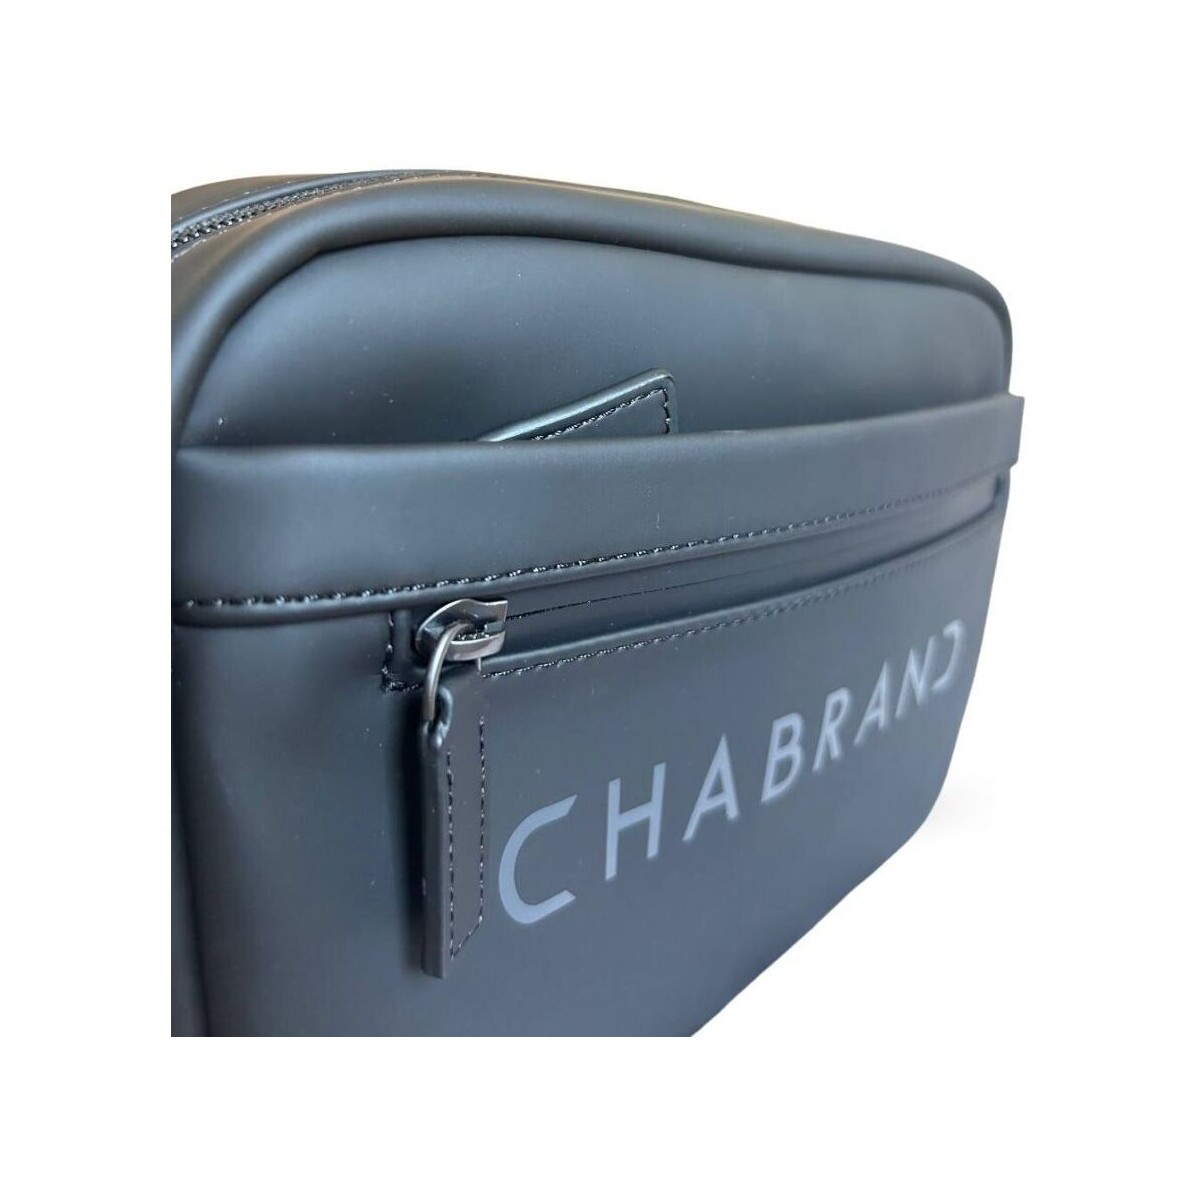 Chabrand Noir Sacoche zippée porté croisé Touch Bis 17239120 qLfm1hdv